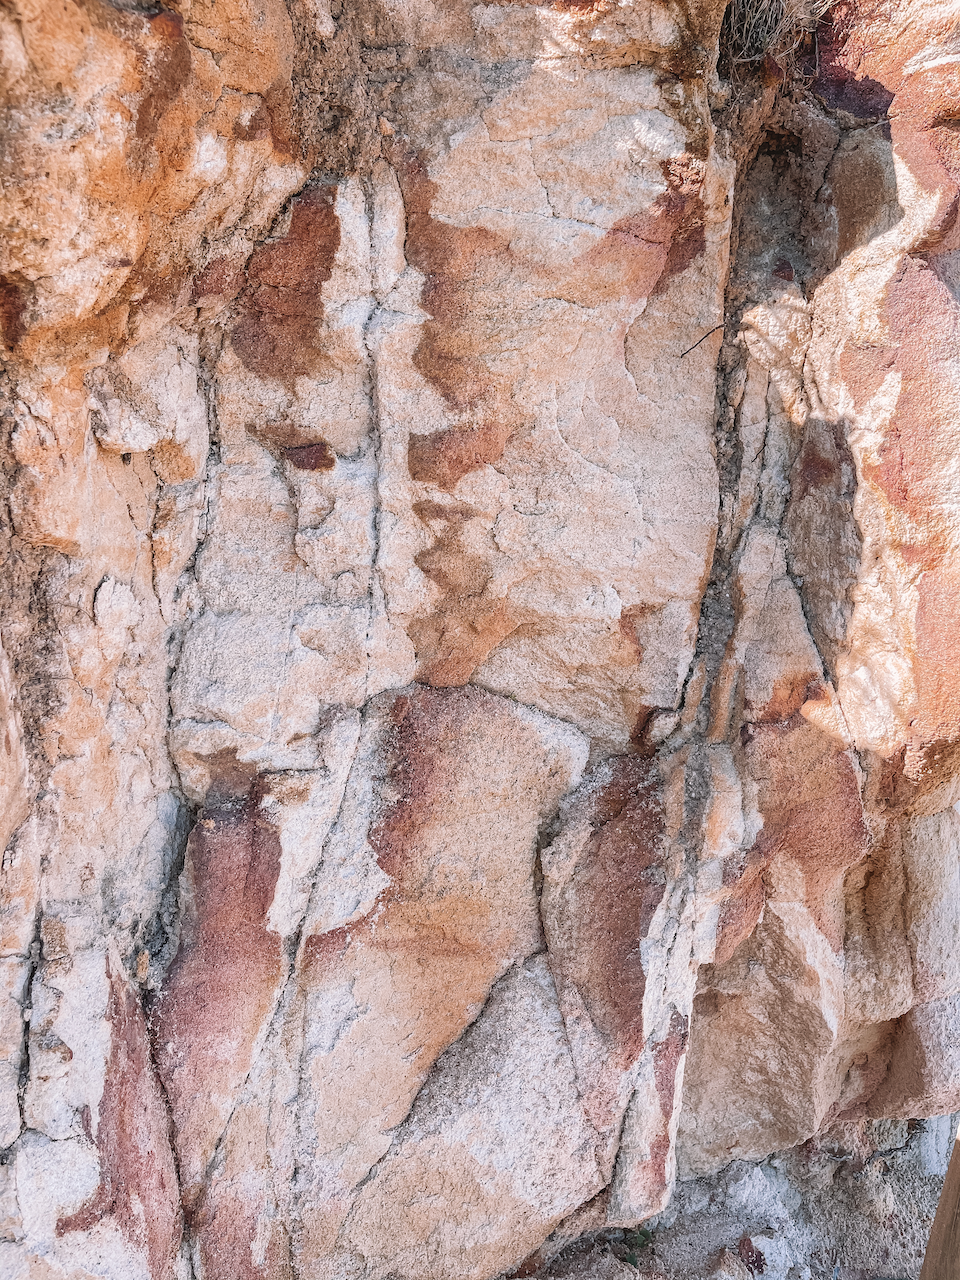 Les couleurs rougeâtre de la pierre - Île de Moreton - Queensland - Australie